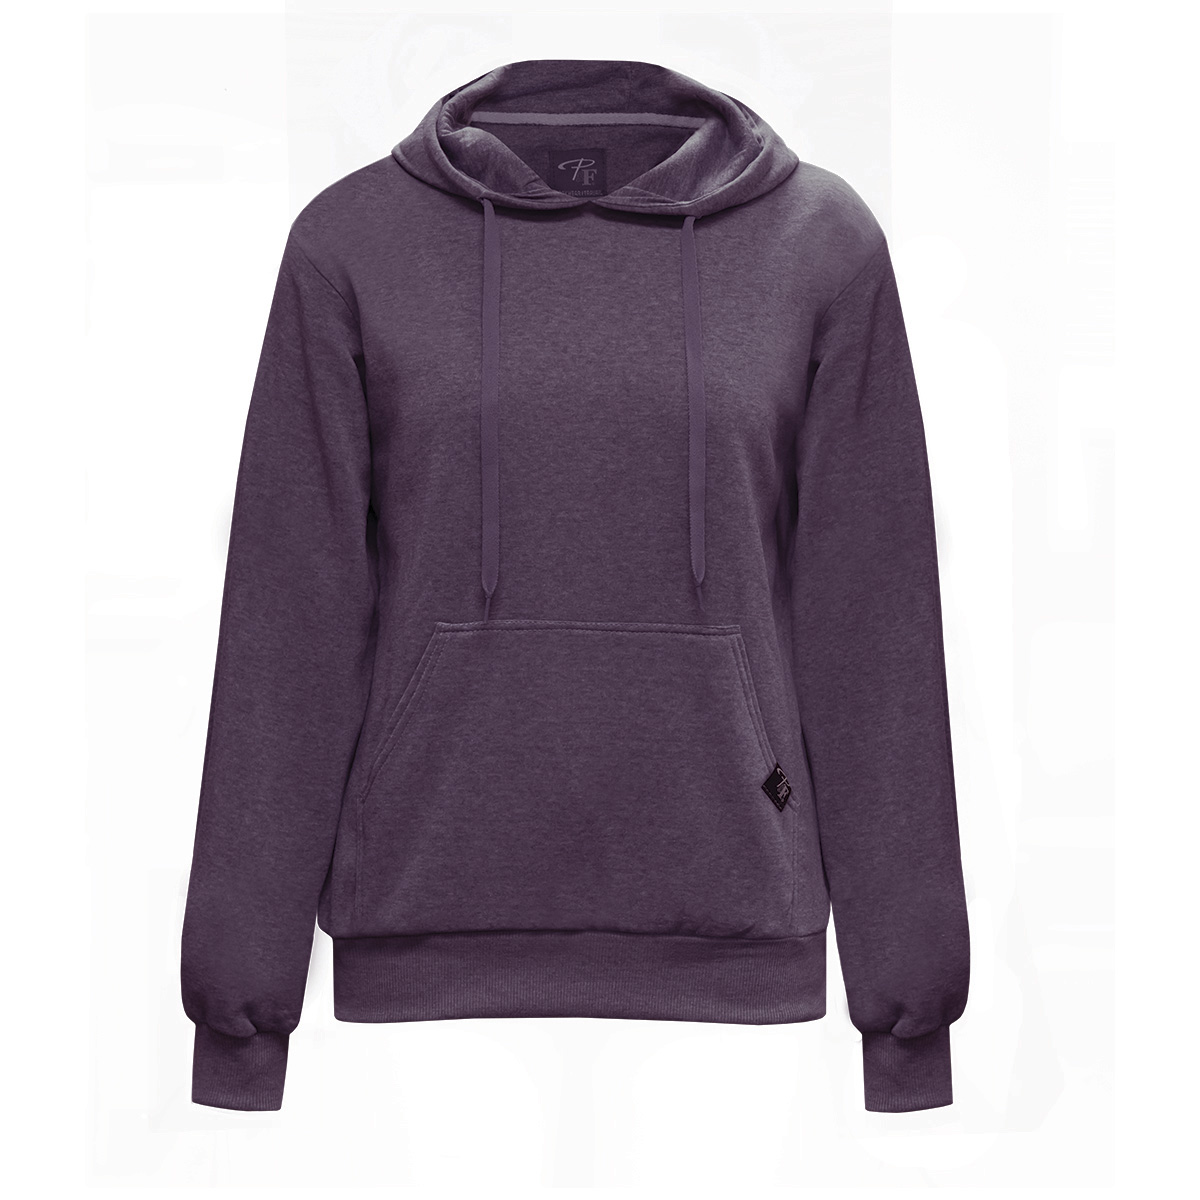 chandail-coton-ouaté-a-capuchon-couleur-prune-hoodie-sweatshirt-purple-color-PF466-18-vue-face-font-view